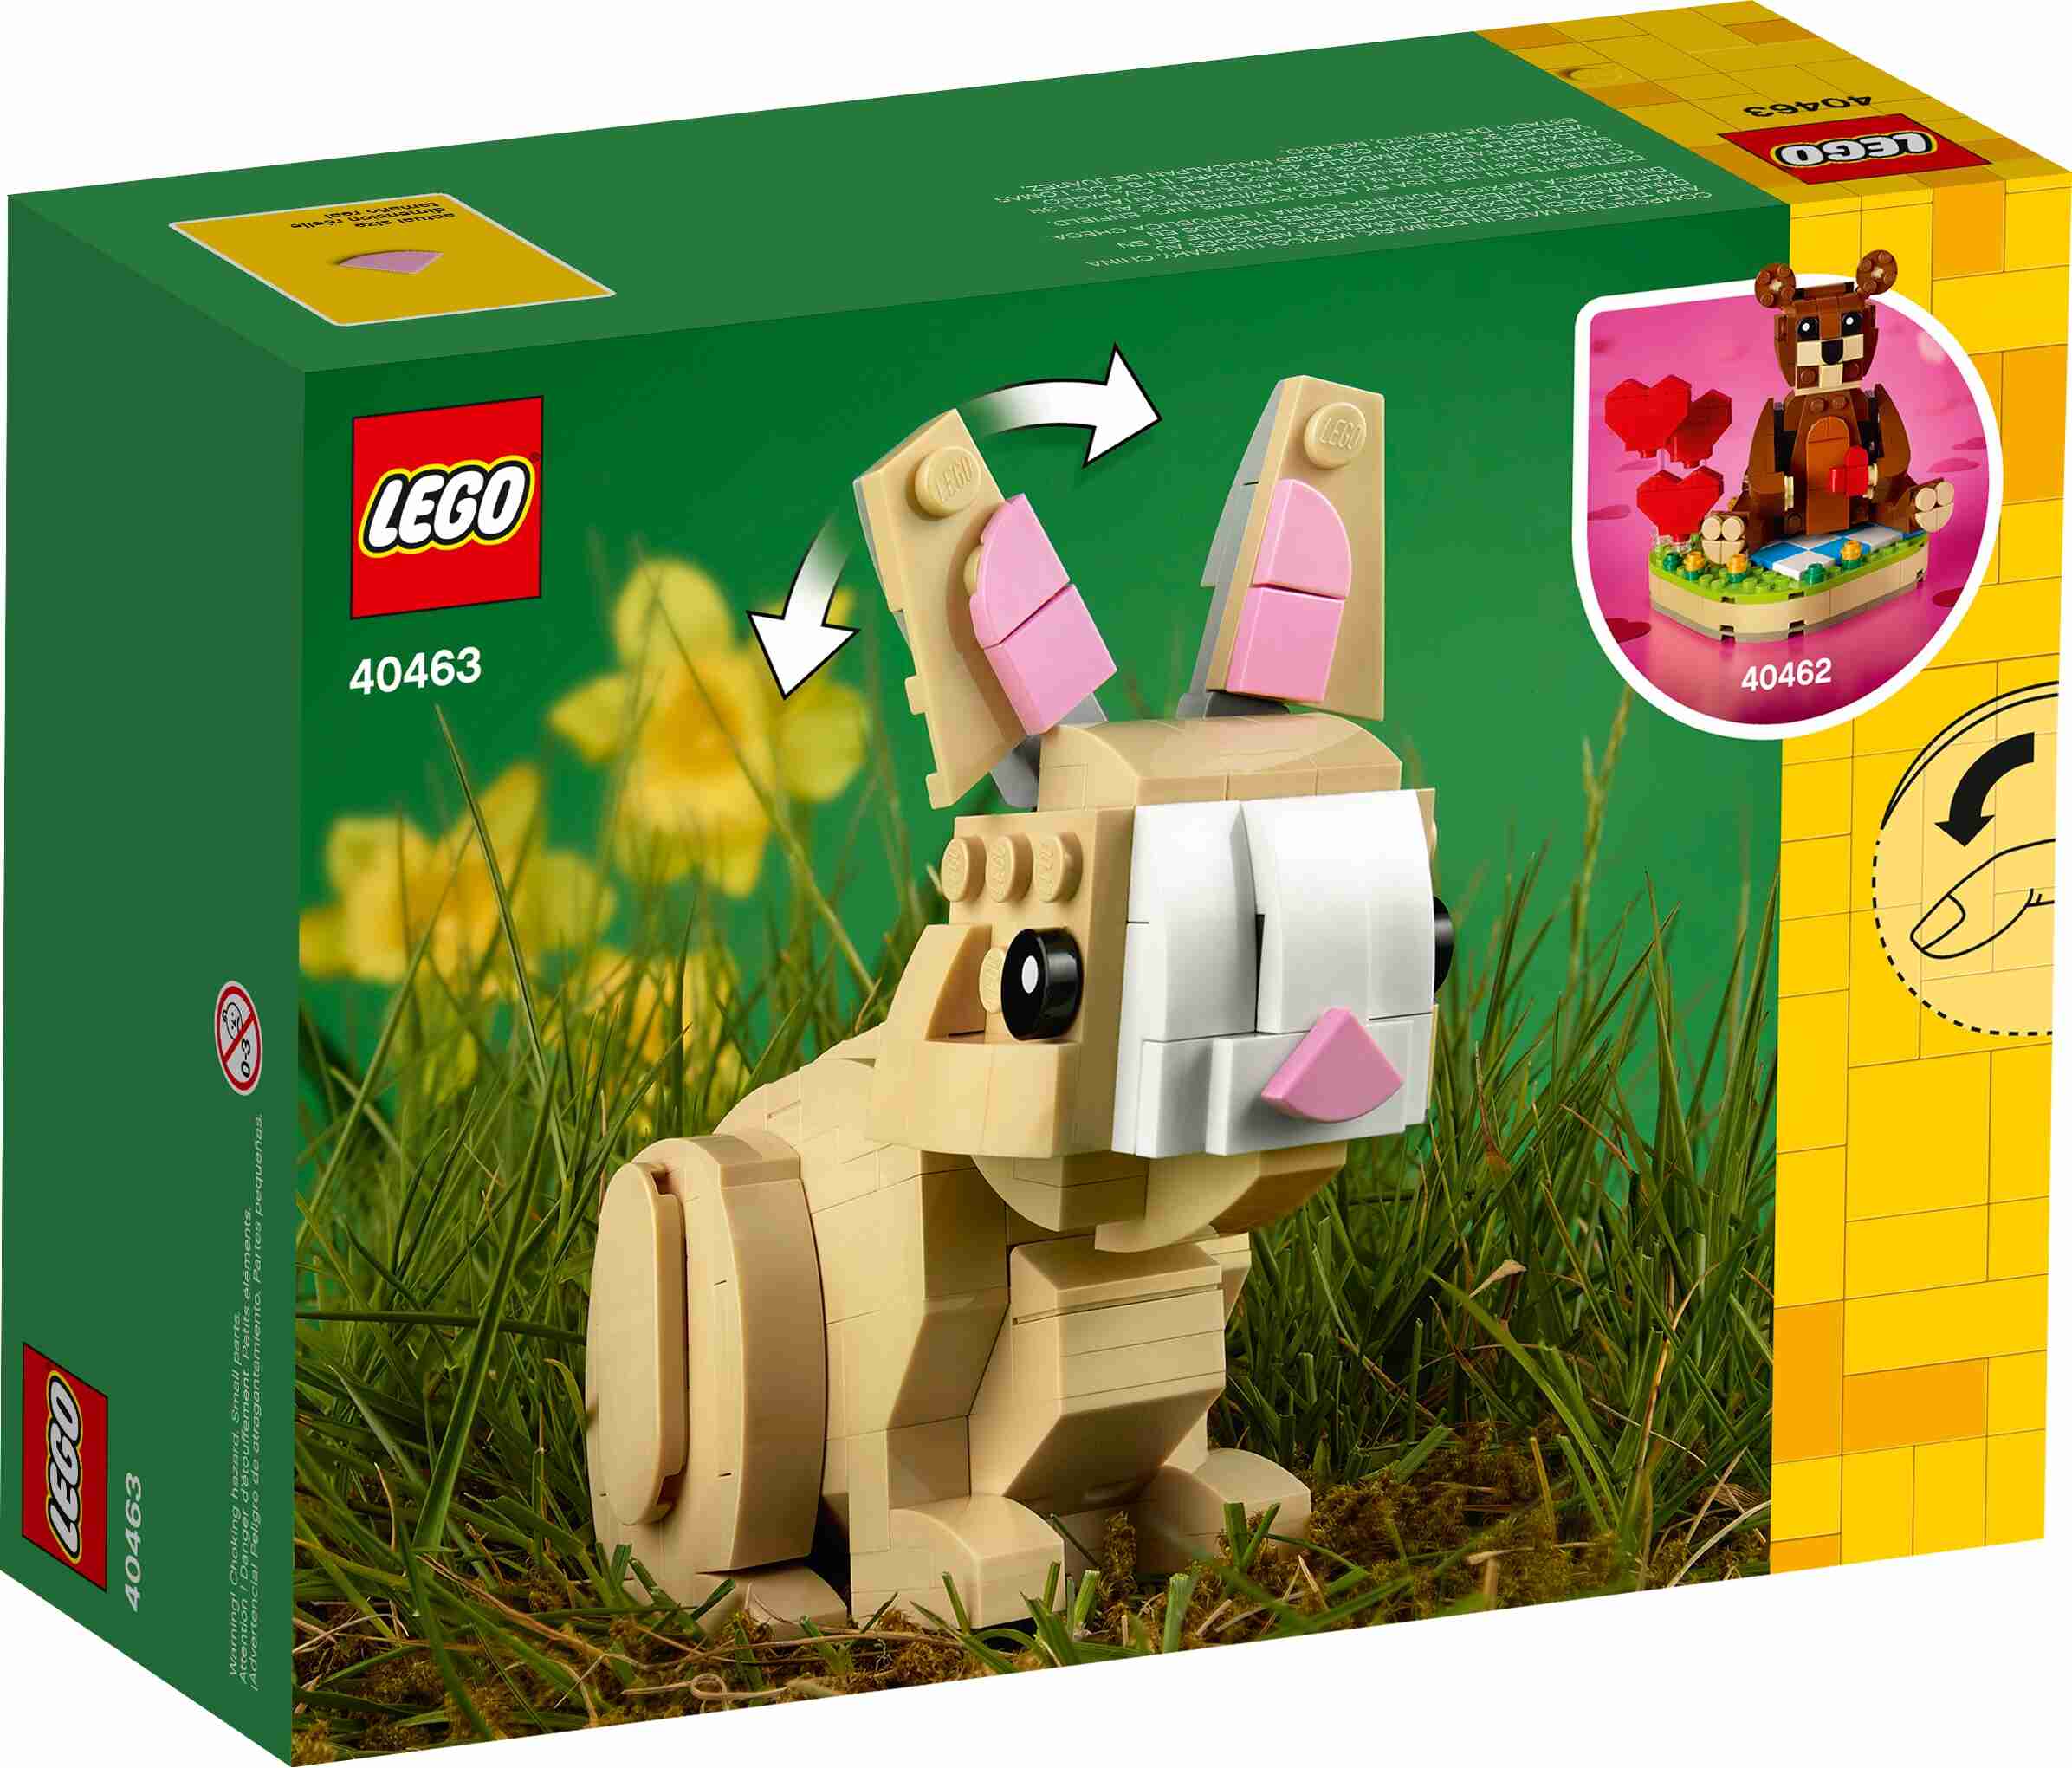 LEGO 40463 Easter Bunny, enthält außerdem eine Wiesenkulisse mit 2 Ostereiern